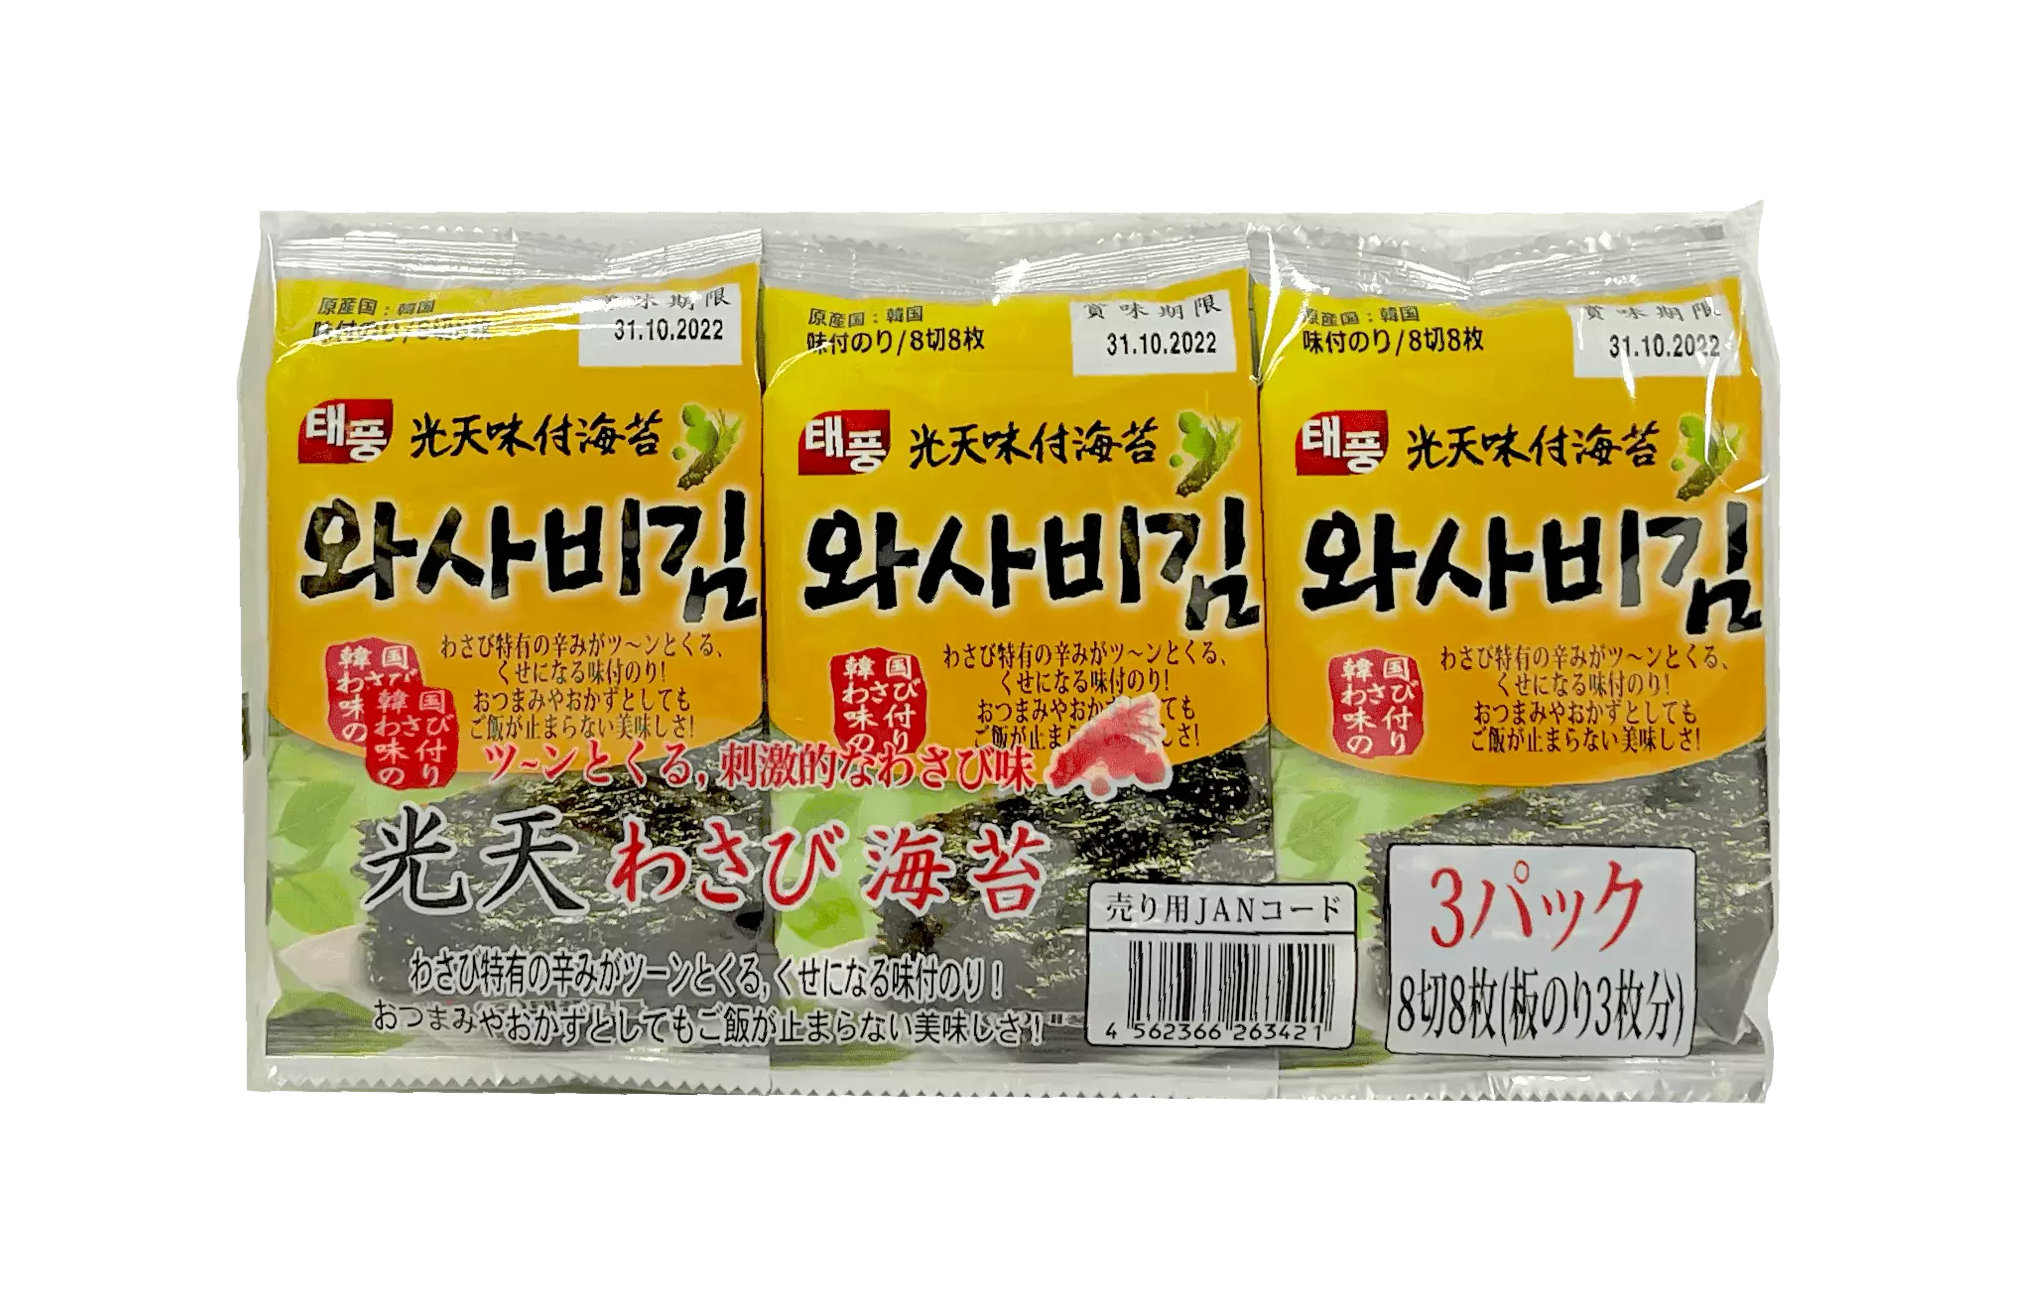 香脆海苔片 芥末风味 (4gx3pcs) NH 韩国